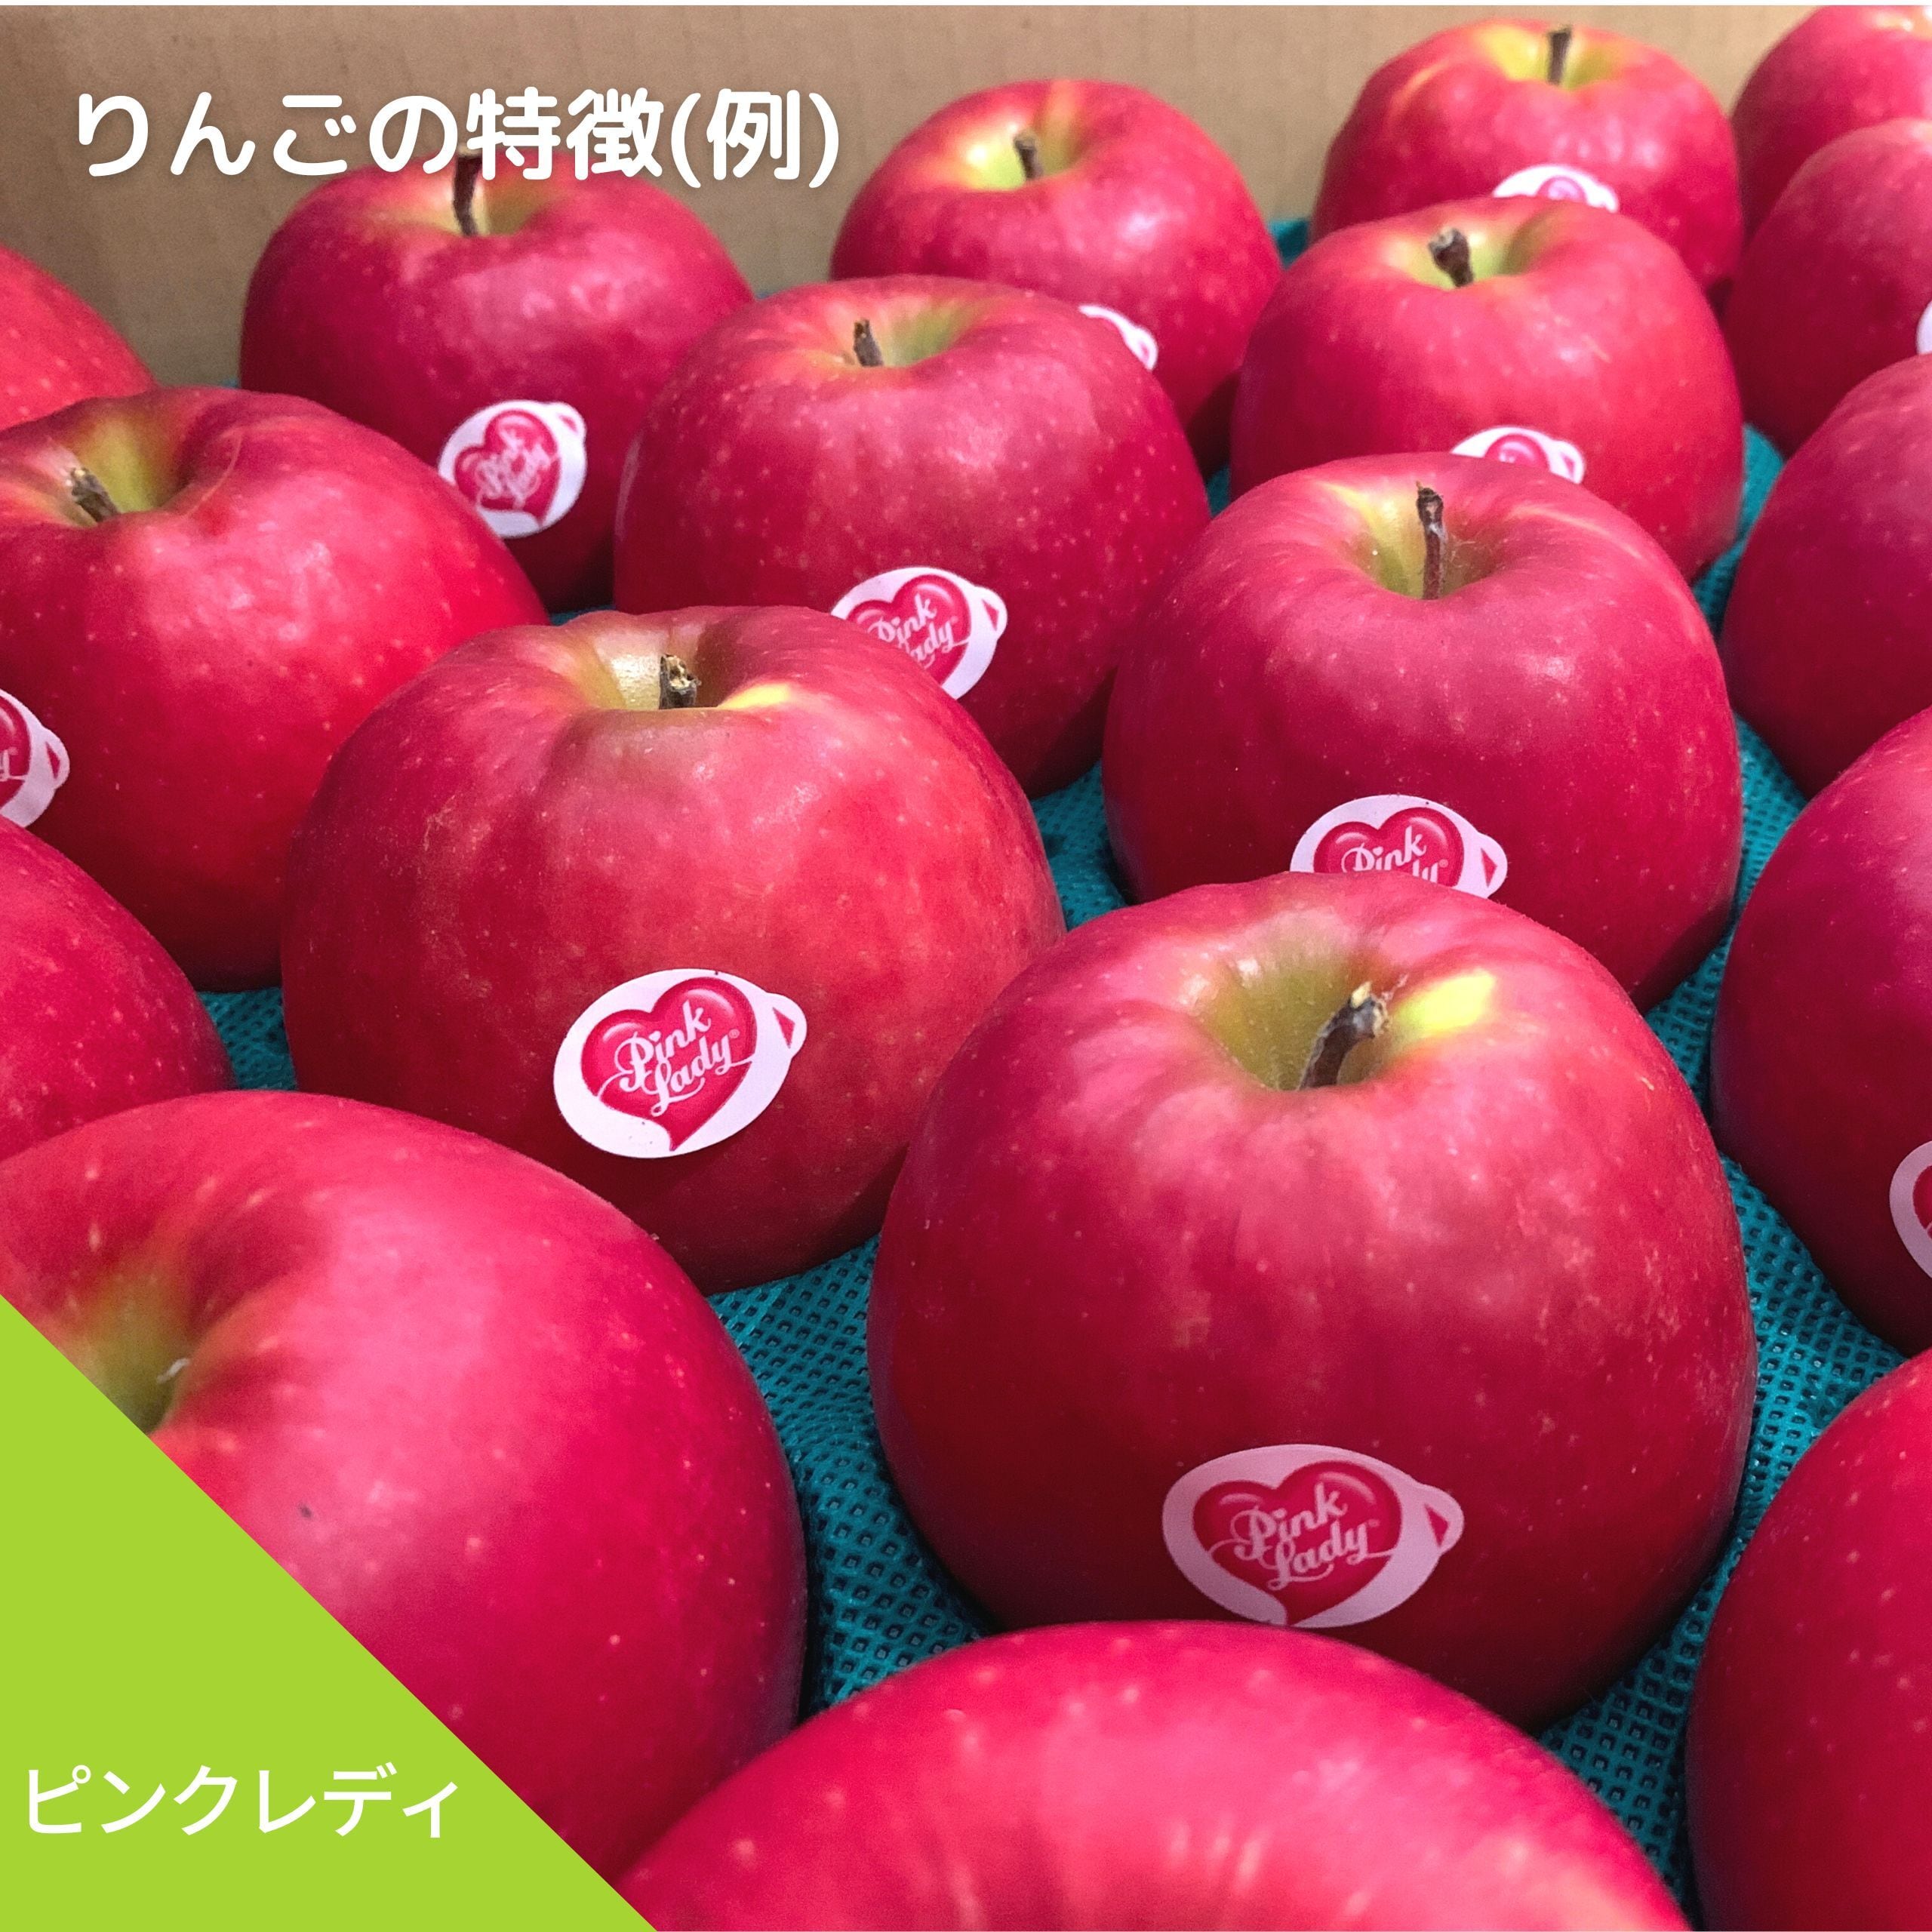 味の変化を楽しむ、すっぱいりんご2種（みちのくロマン、ピンク